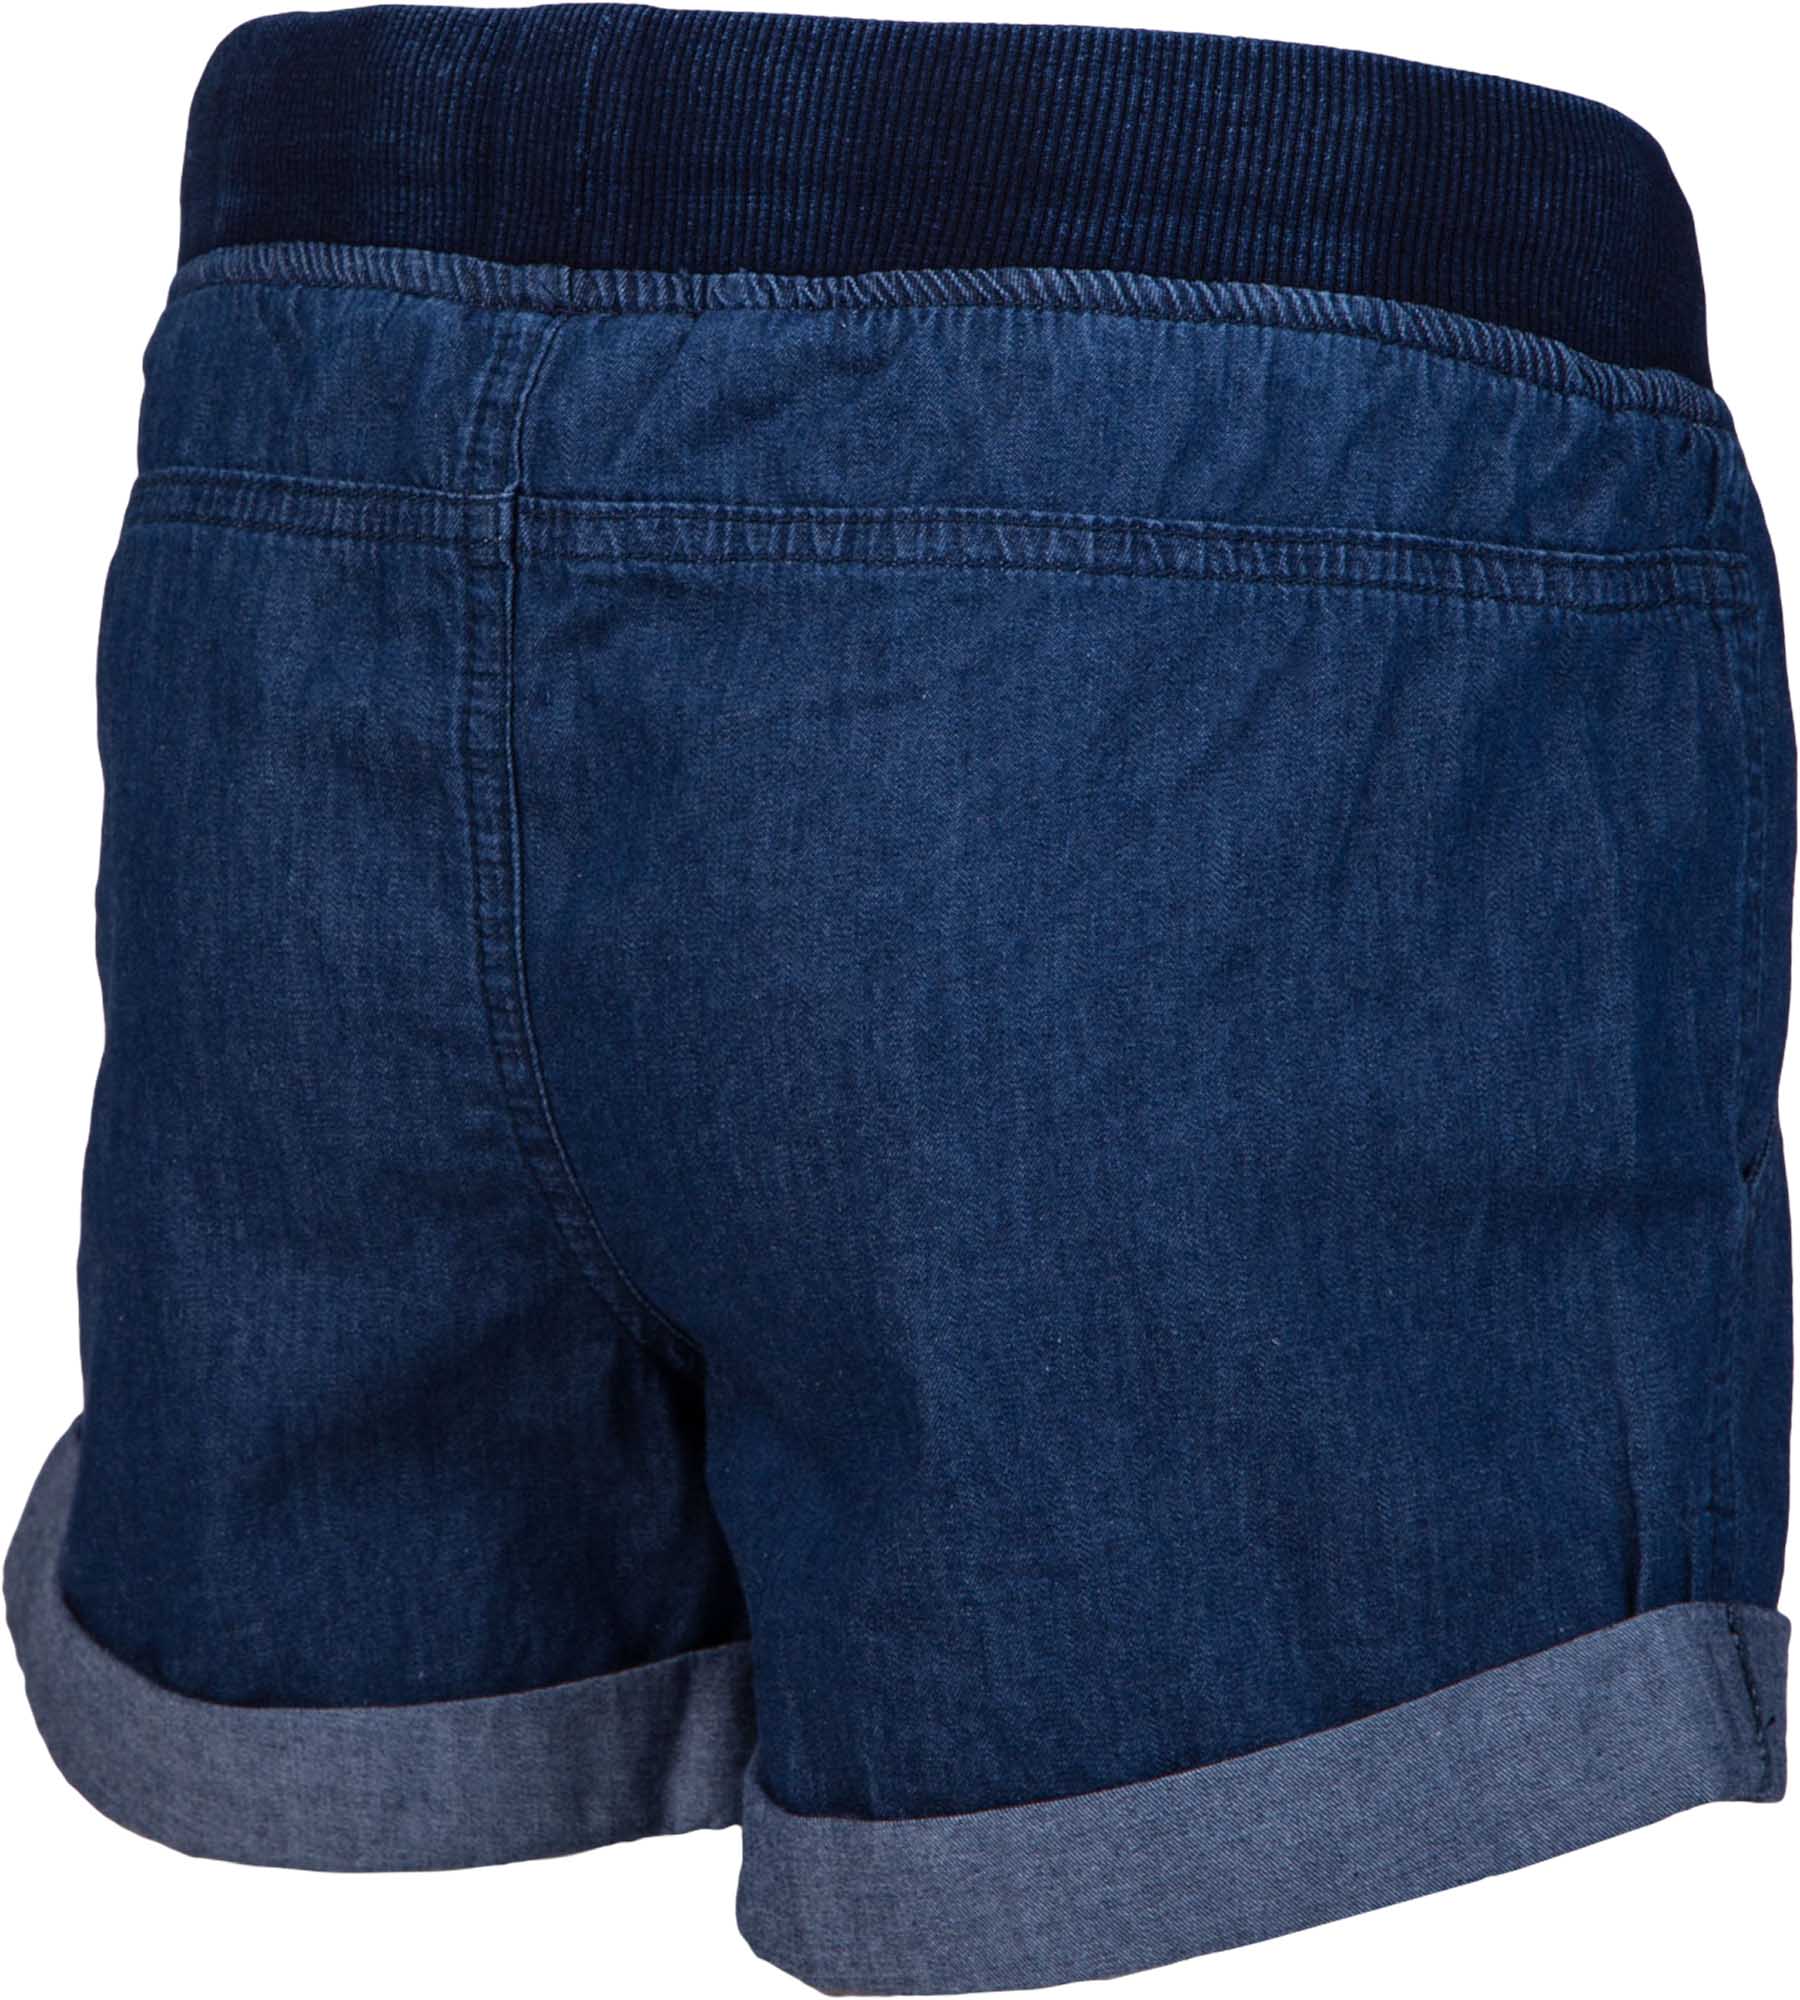 Women's shorts